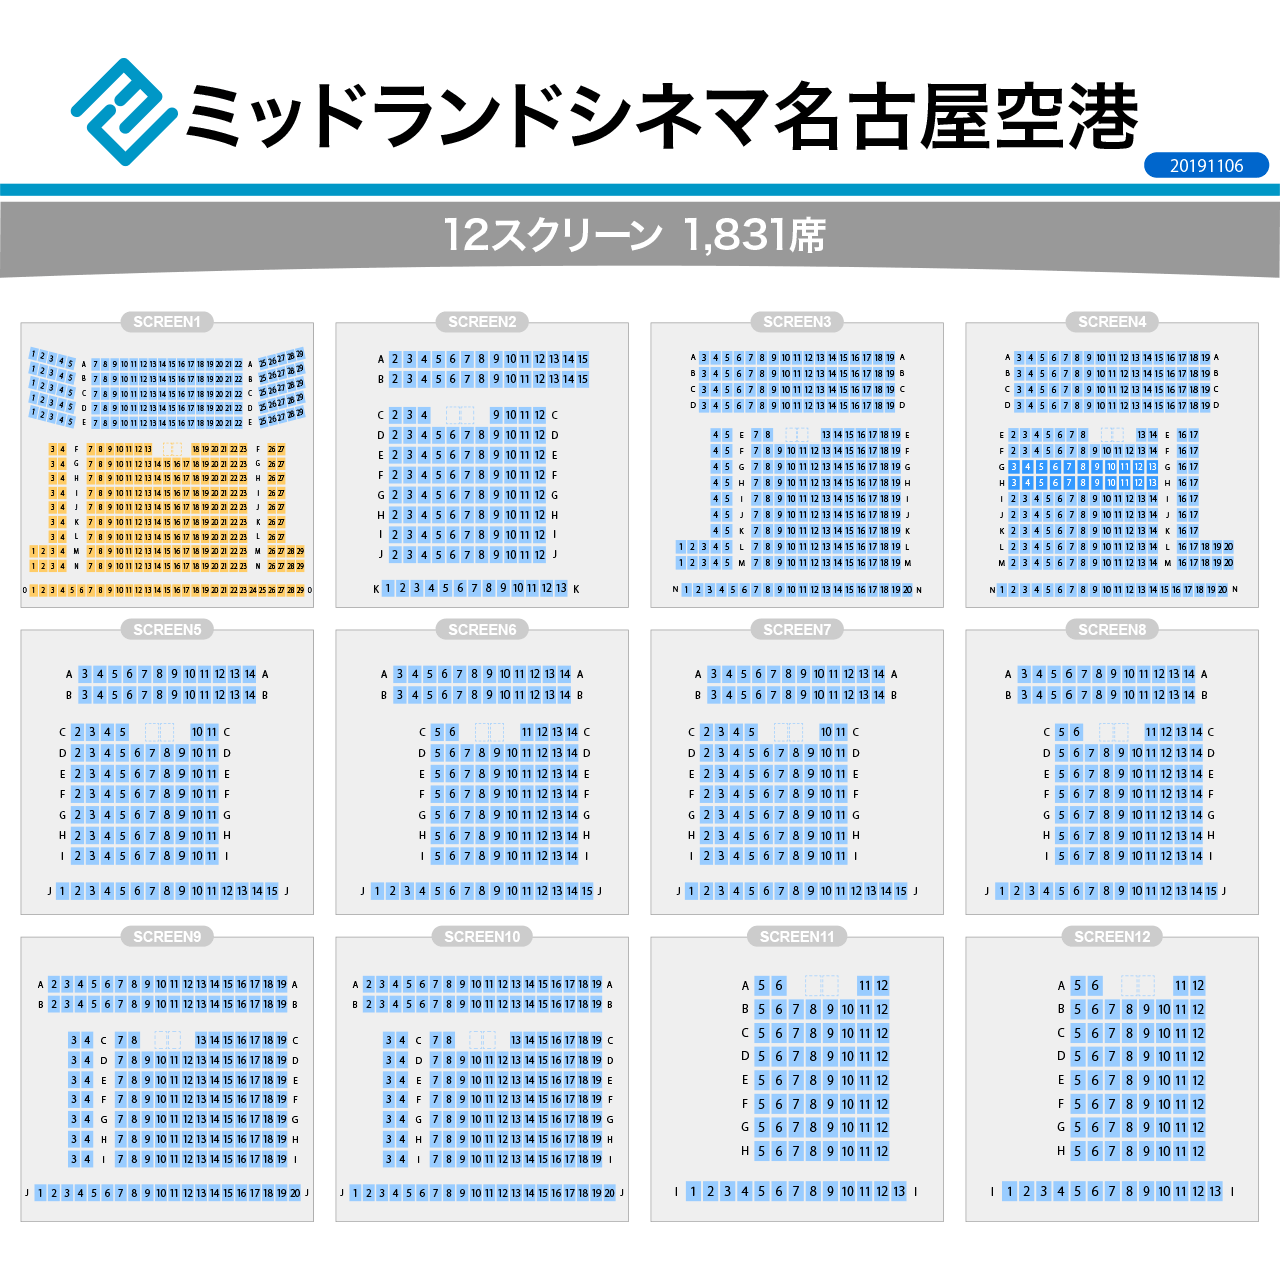 ミッドランドシネマ名古屋空港スクリーンの座席表